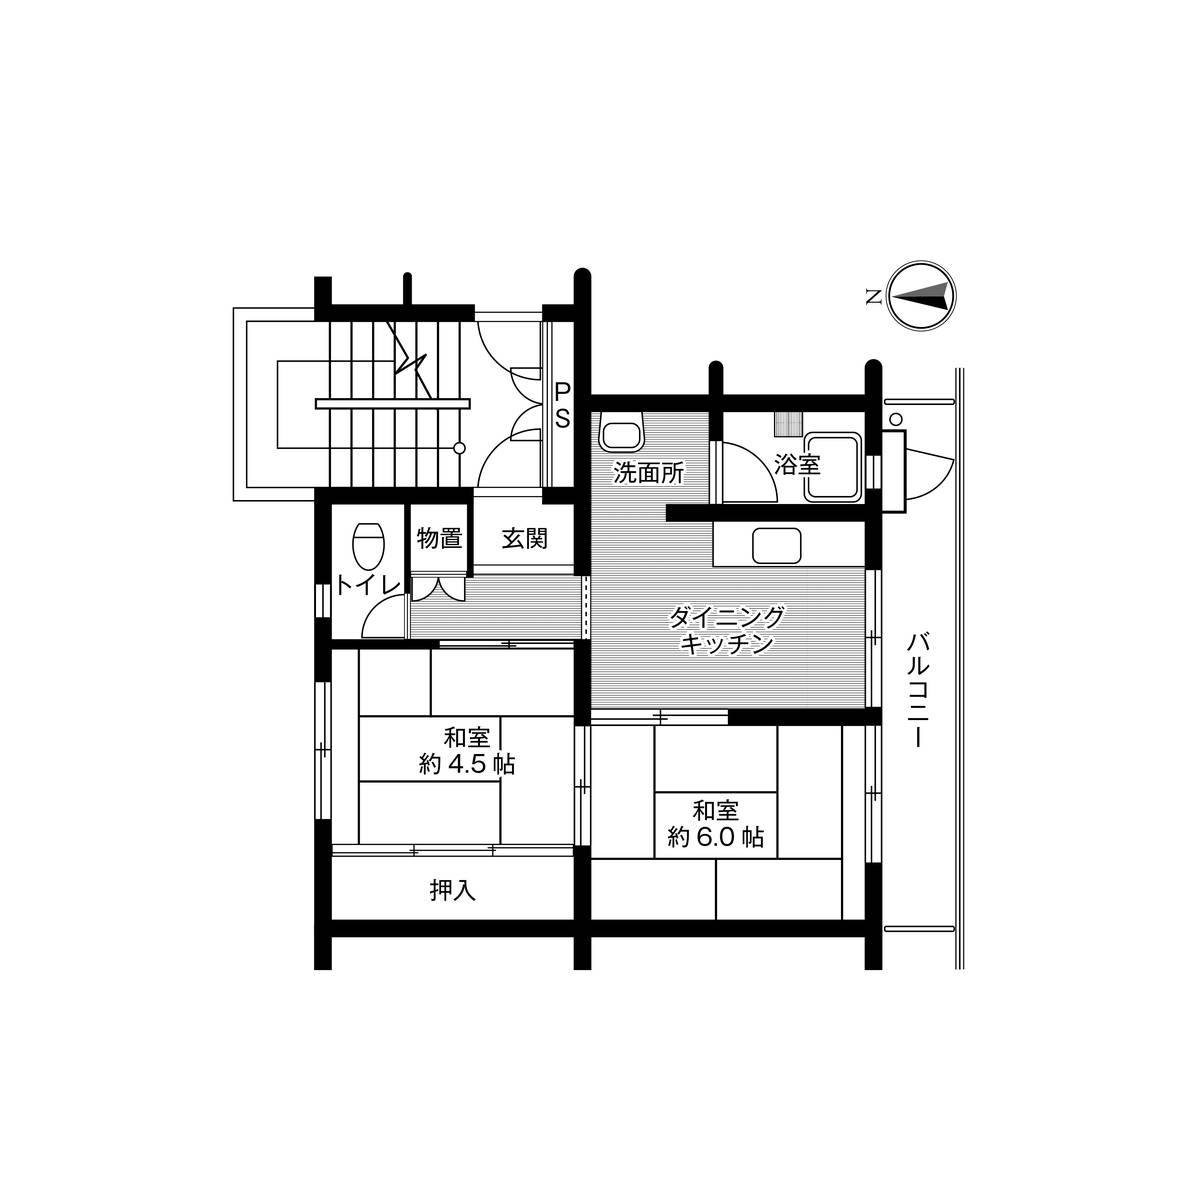 2DK floorplan of Village House Kemigawa in Mihama-ku